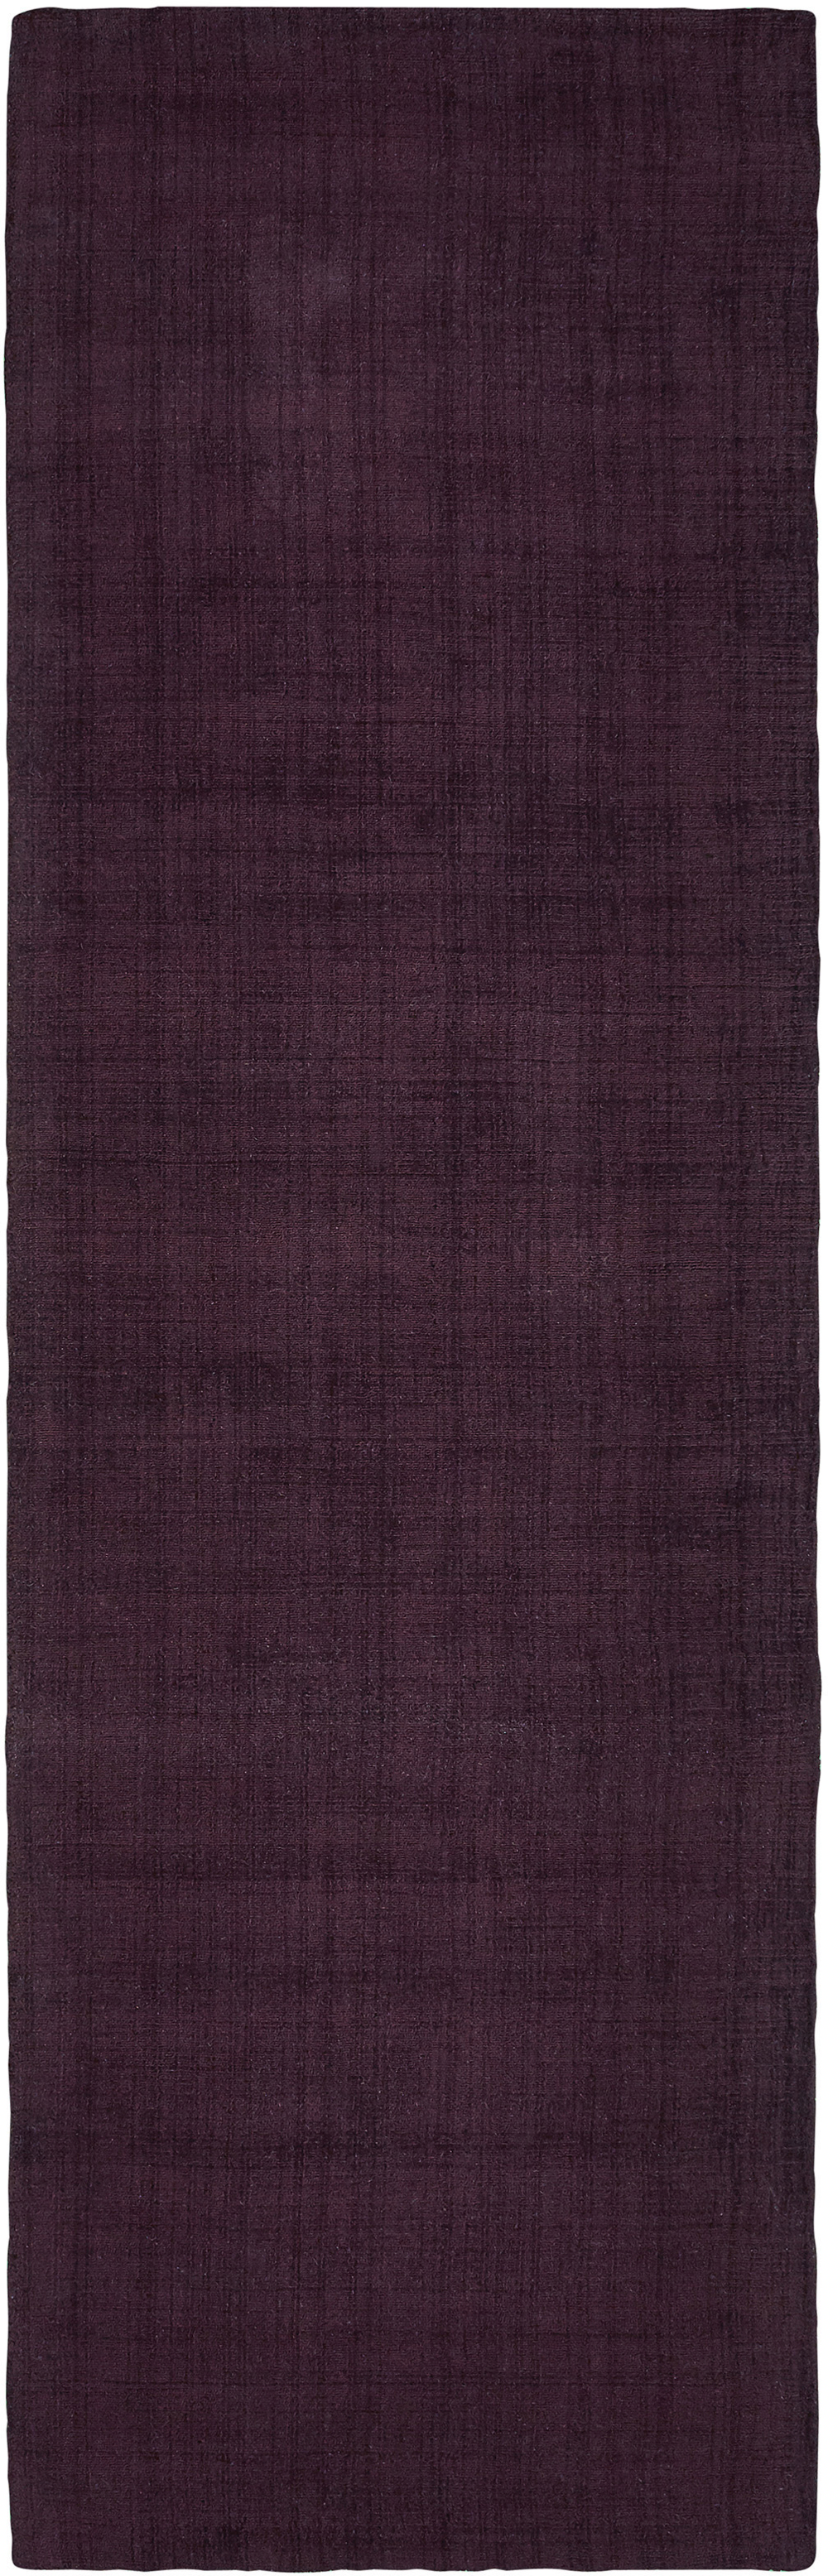 Oriental Weavers MIRA 35106 Purple Rug